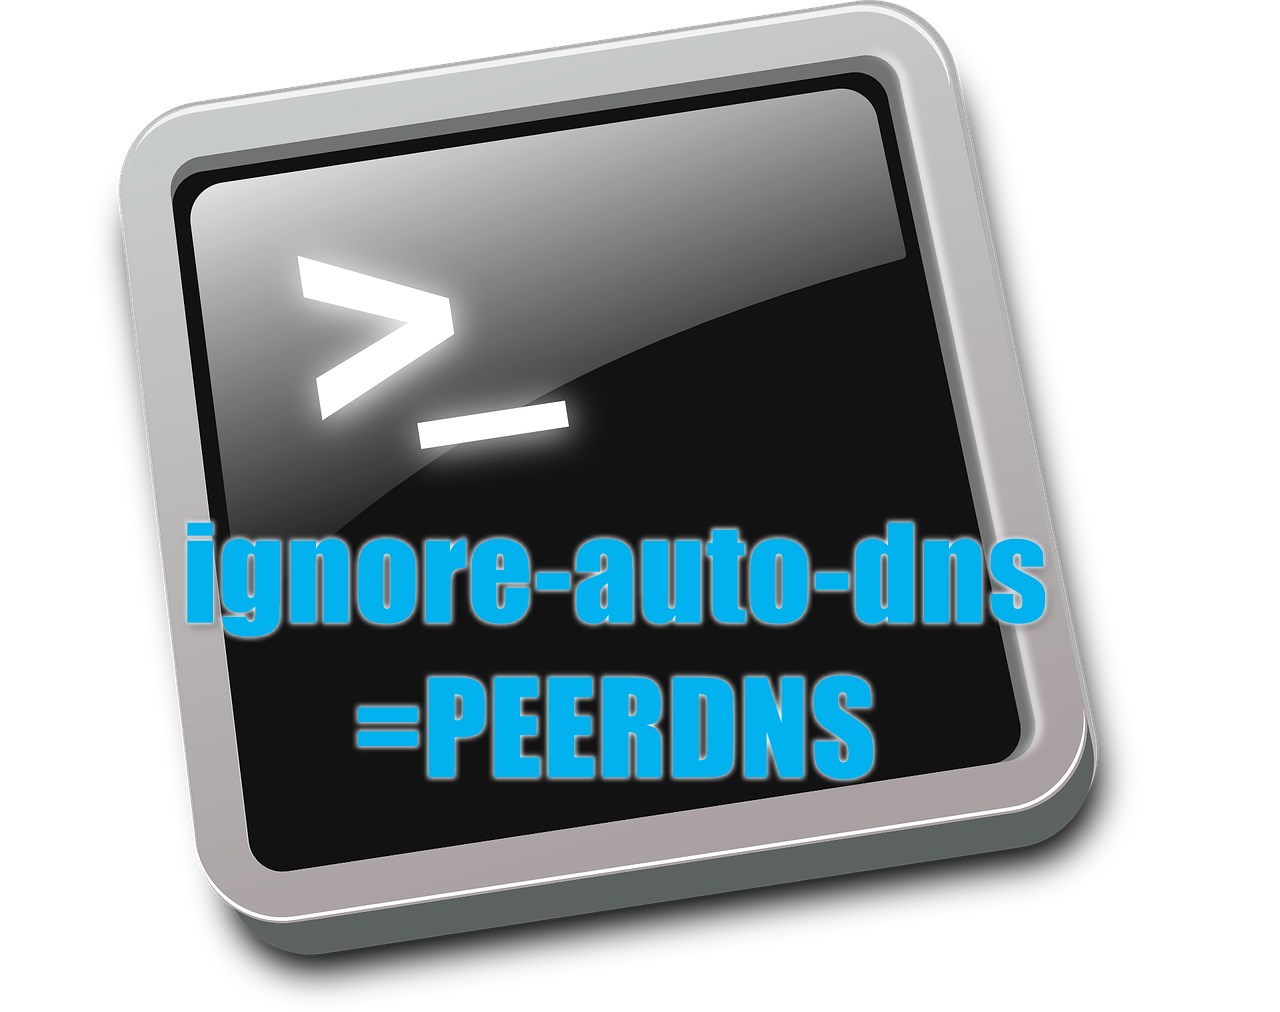 RHEL】キーファイルで「PEERDNS=no」は「ignore-auto-dns=true」と設定